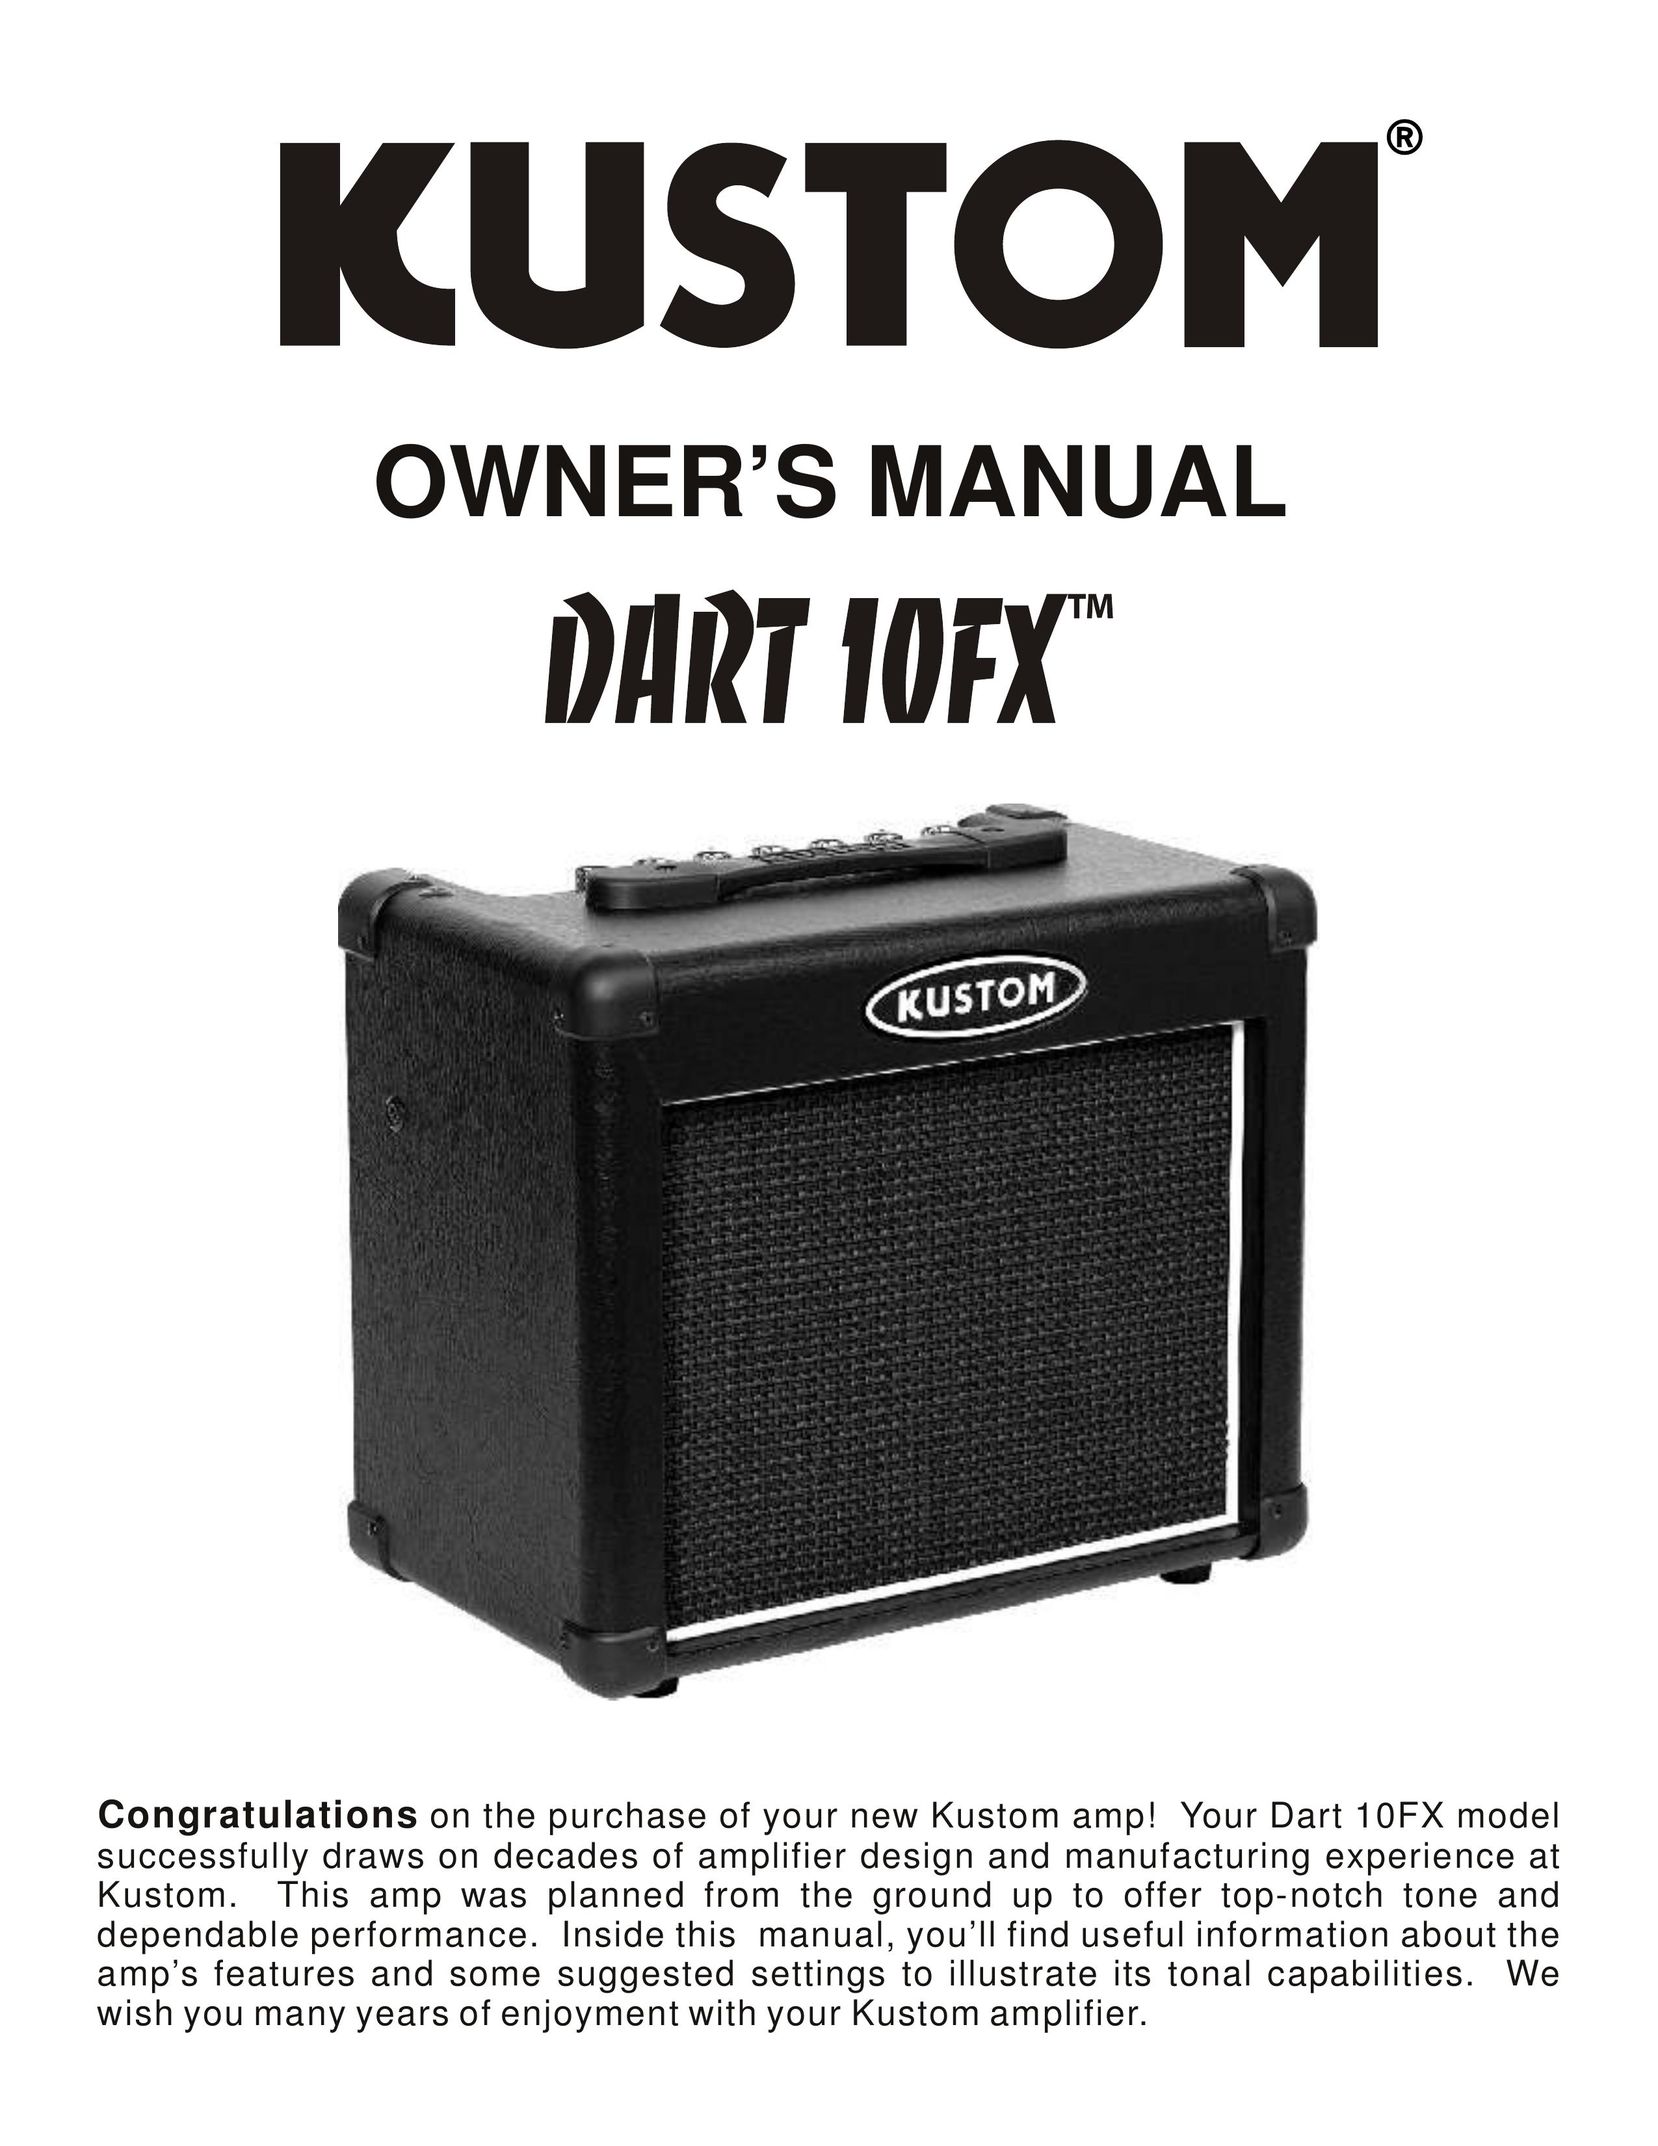 Kustom Dart 10FX Stereo Amplifier User Manual